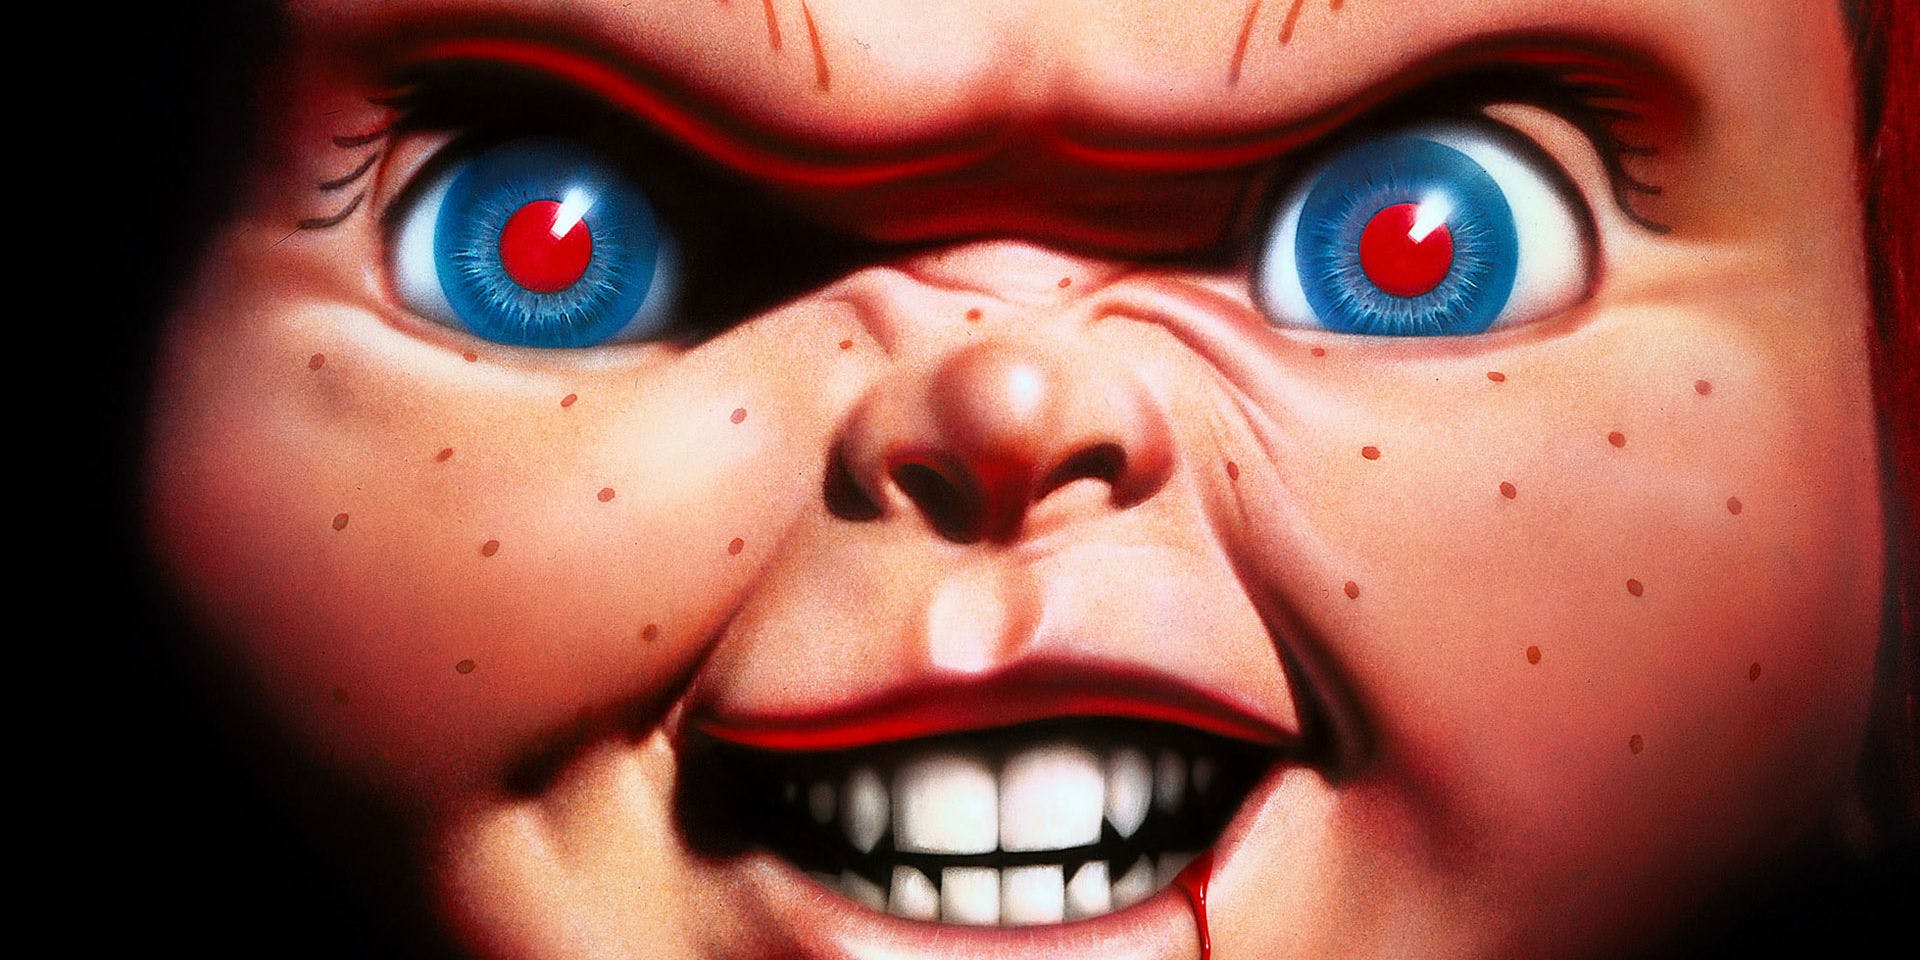 Chucky aparece em imagem sangrenta do novo Brinquedo Assassino